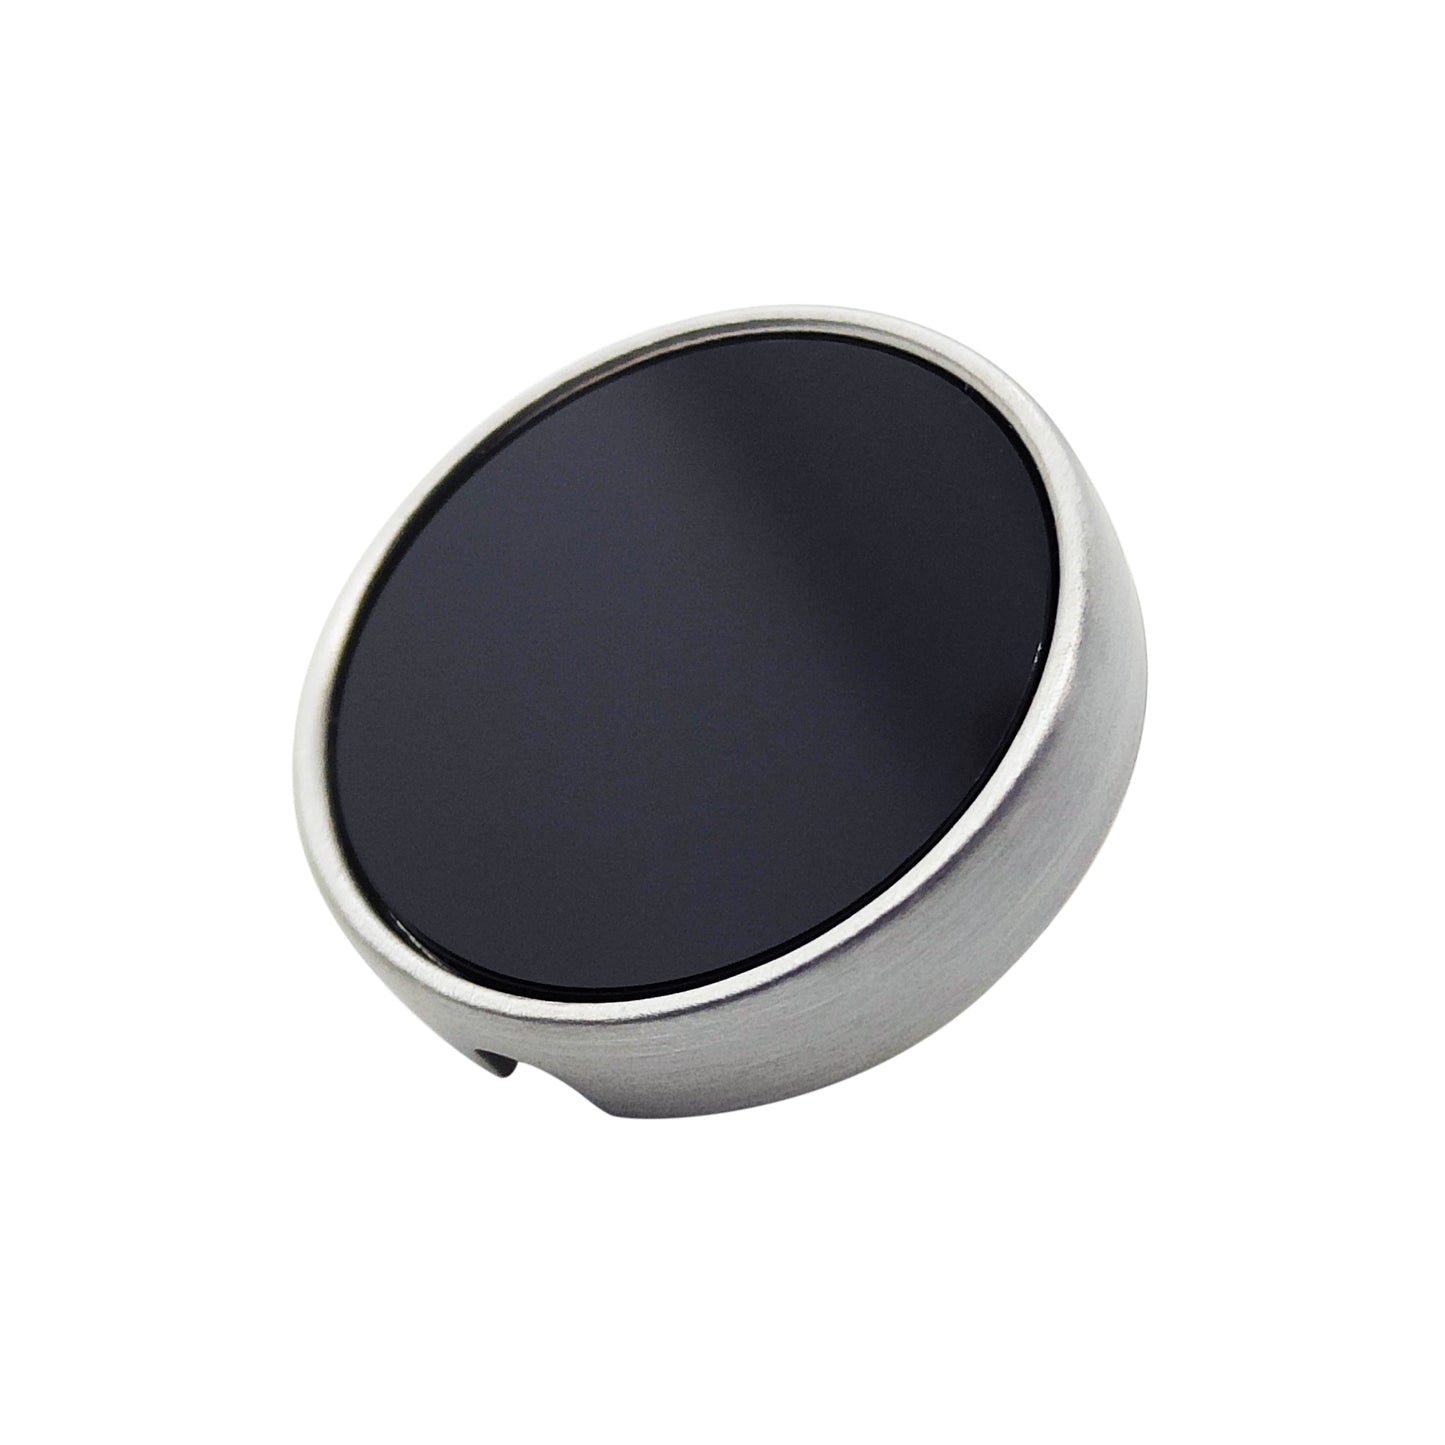 PRO Bouton 21mm en métal et onyx noir - Personnalisable